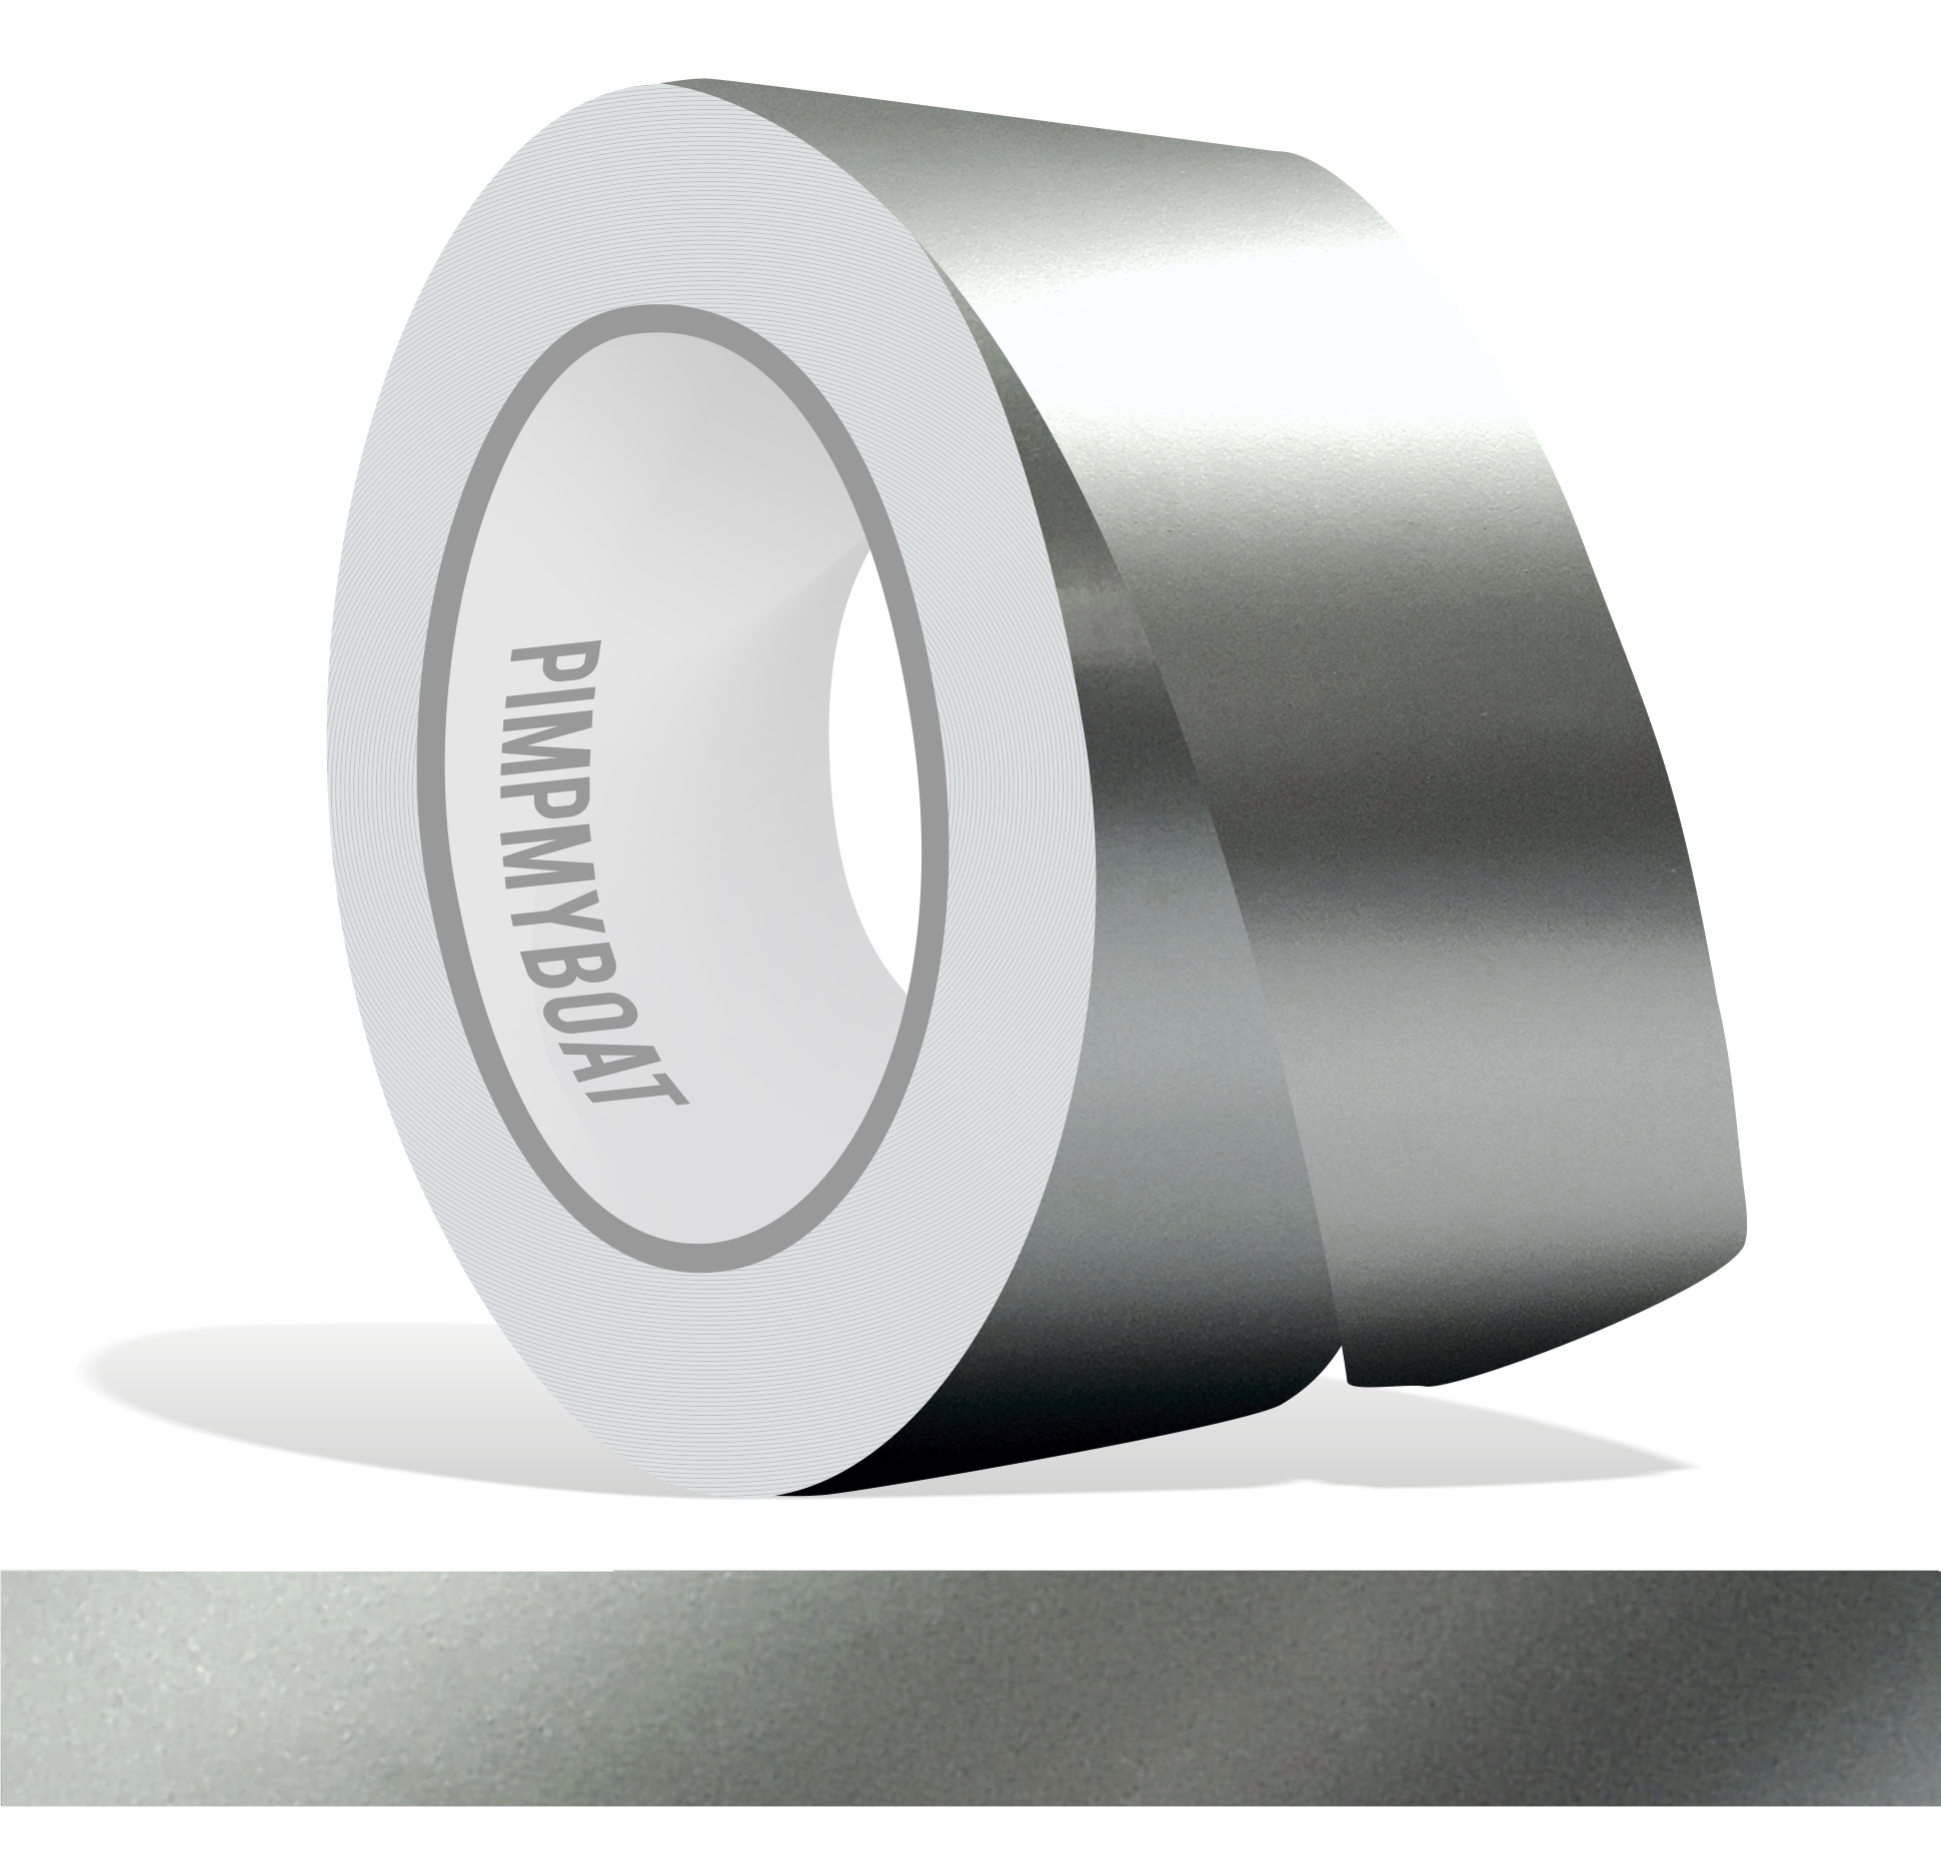 siviwonder Zierstreifen Silber metallic Glanz in in 30 mm Breite und 10 m  Länge für Auto Boot Jetski Modellbau Klebeband Dekorstreifen